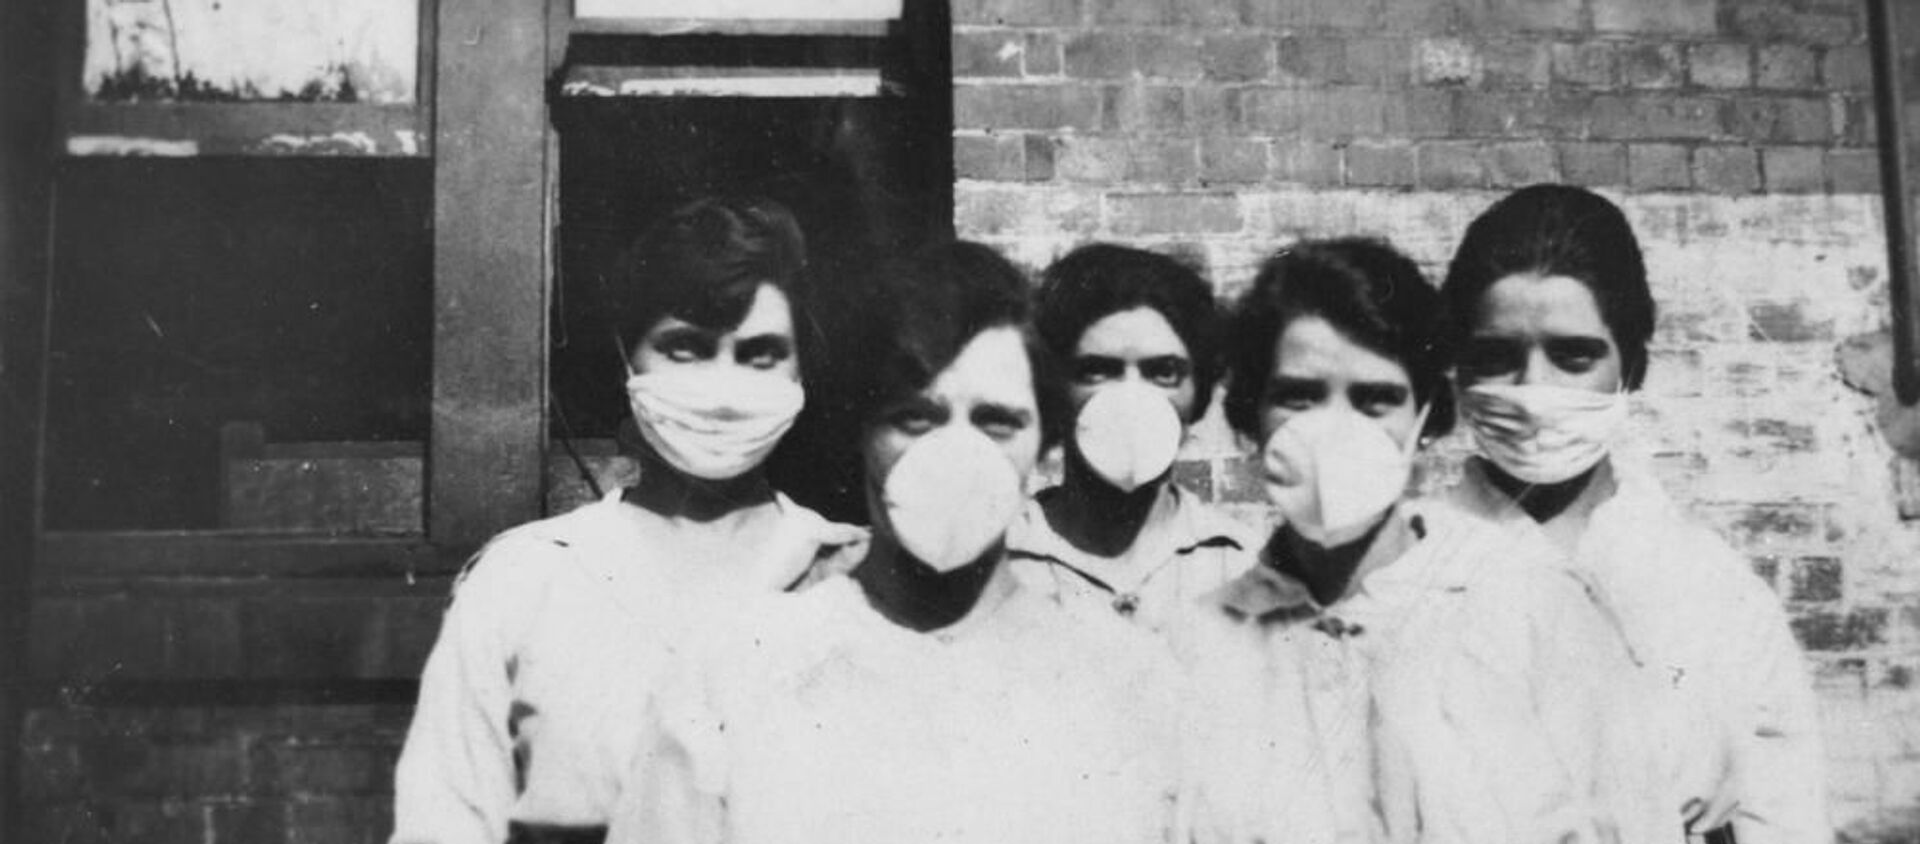 Mujeres con máscaras ante la epidemia de gripe en 1919 - Sputnik Mundo, 1920, 15.03.2020